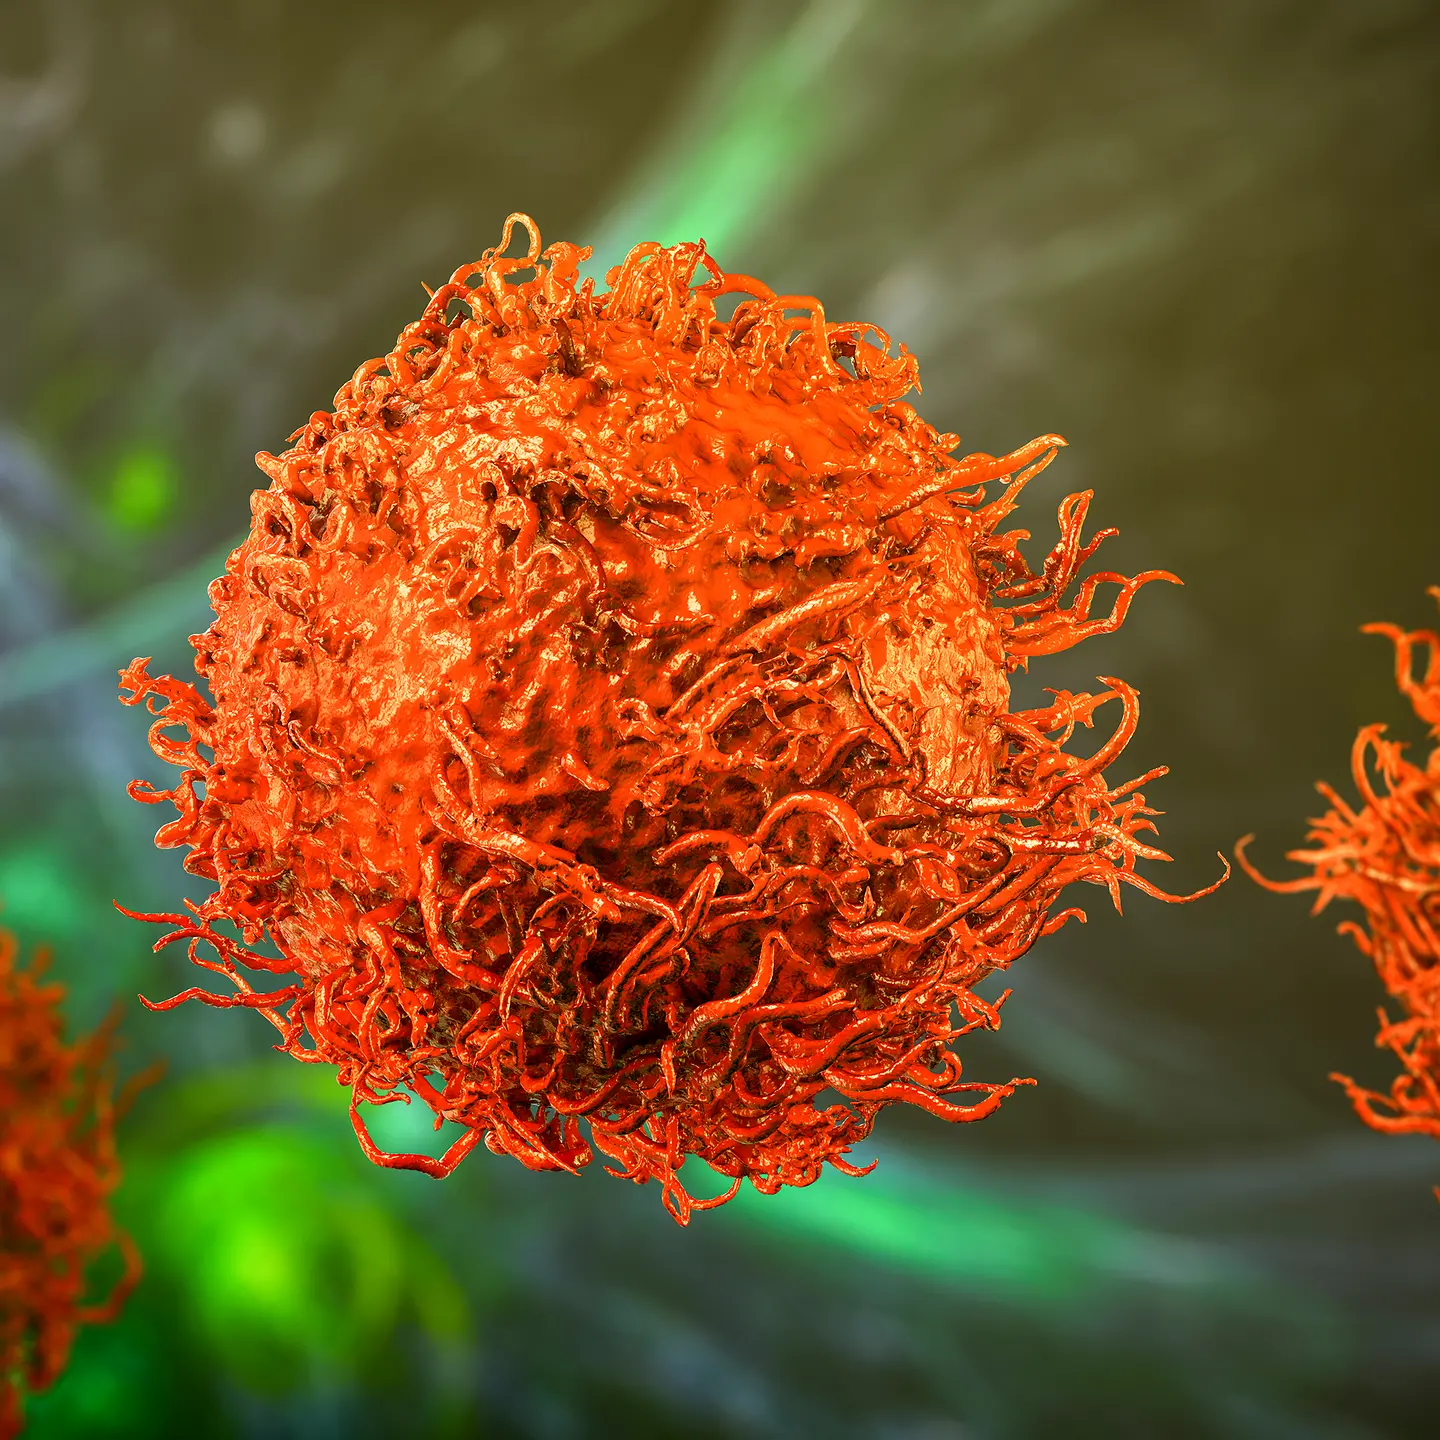 Stilisierte Darstellung einer Krebszelle